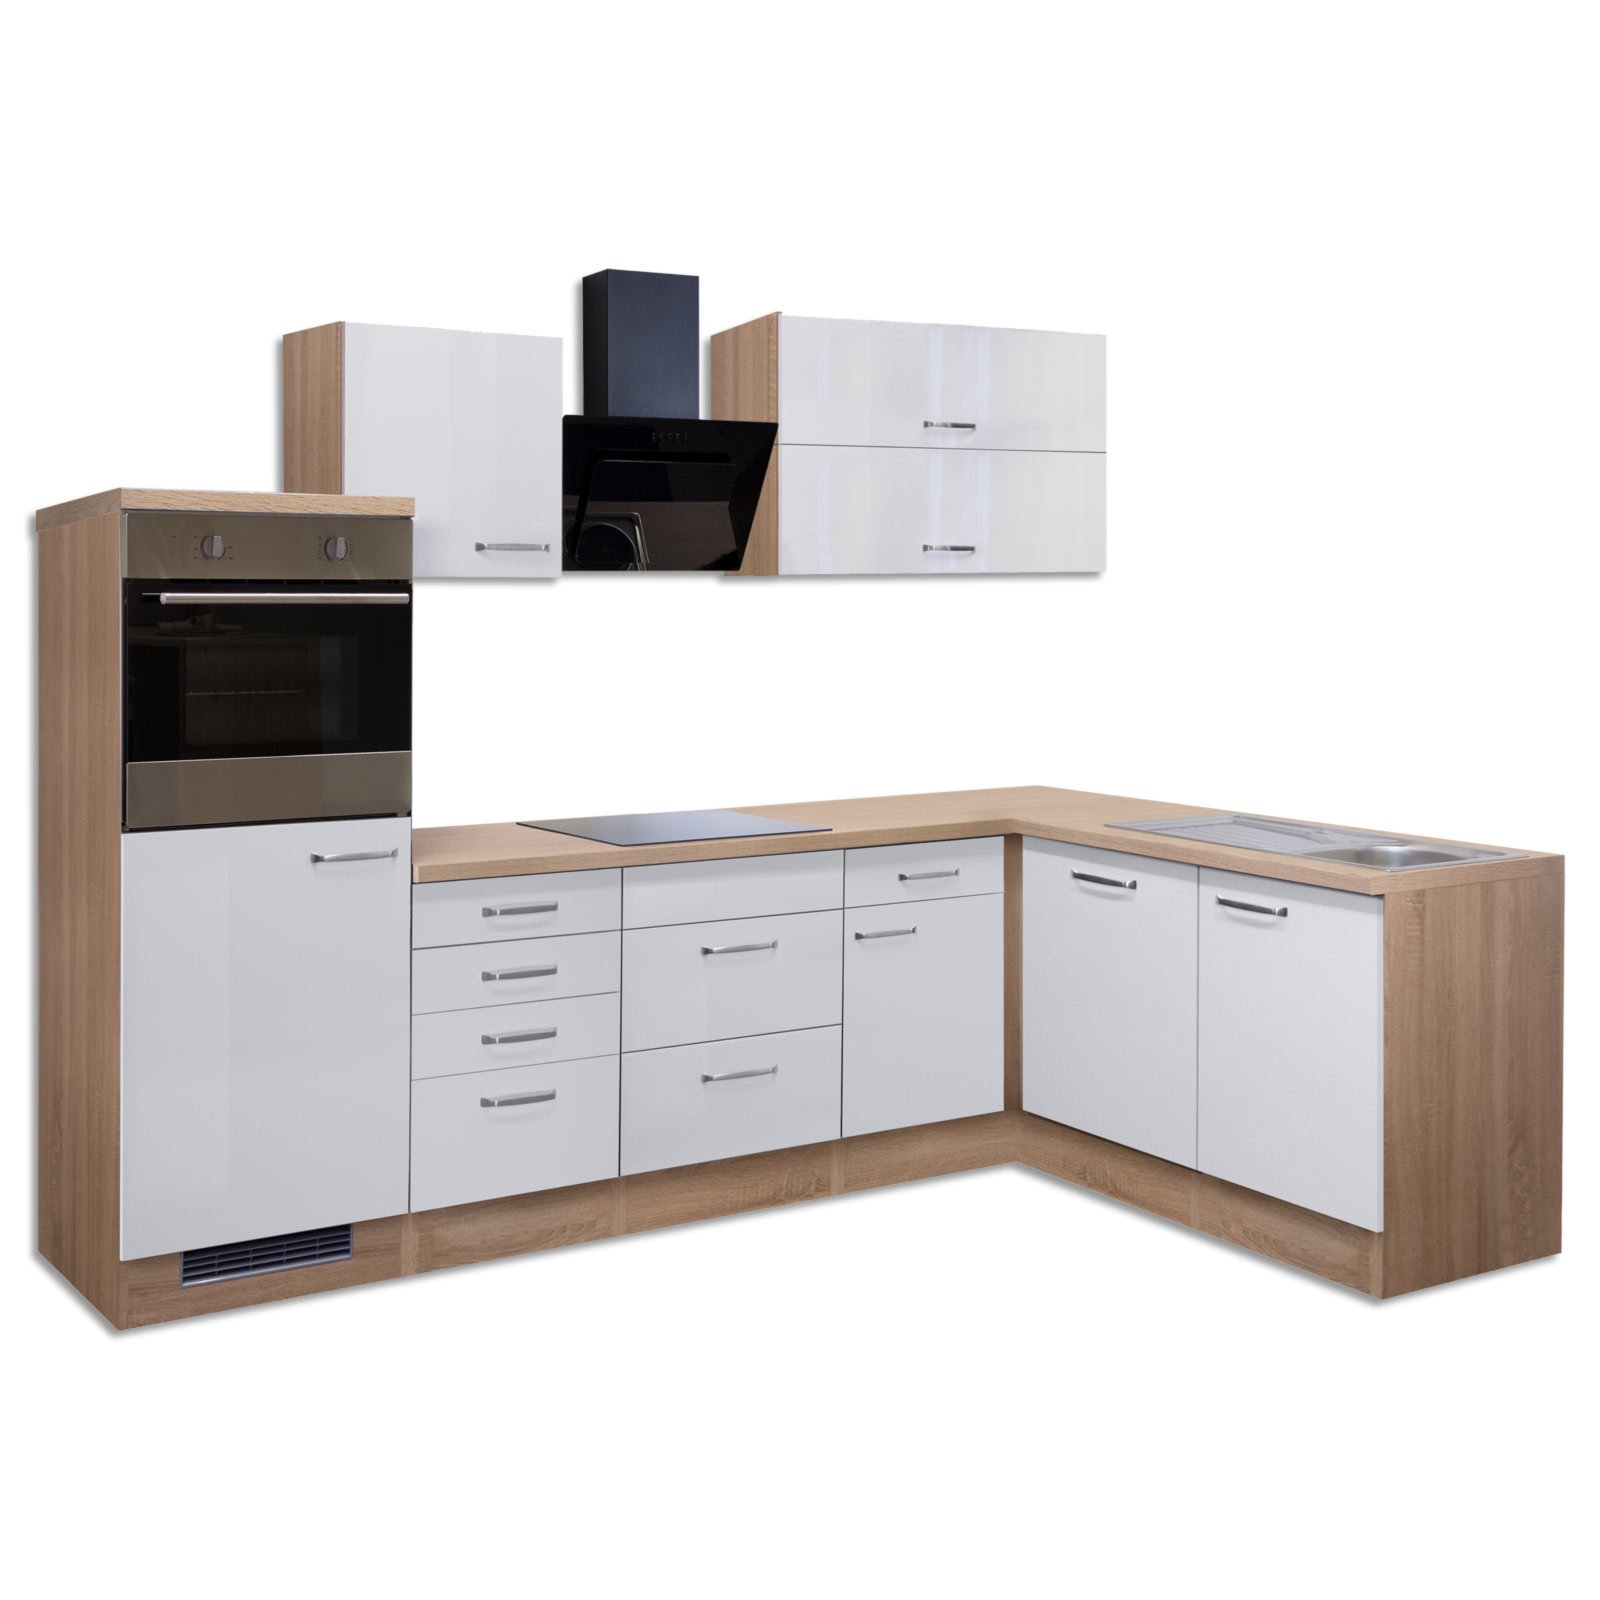 Winkelküche VALERO - weiß Hochglanz-Sonoma Eiche - mit E-Geräten - 280x170  cm | Online bei ROLLER kaufen